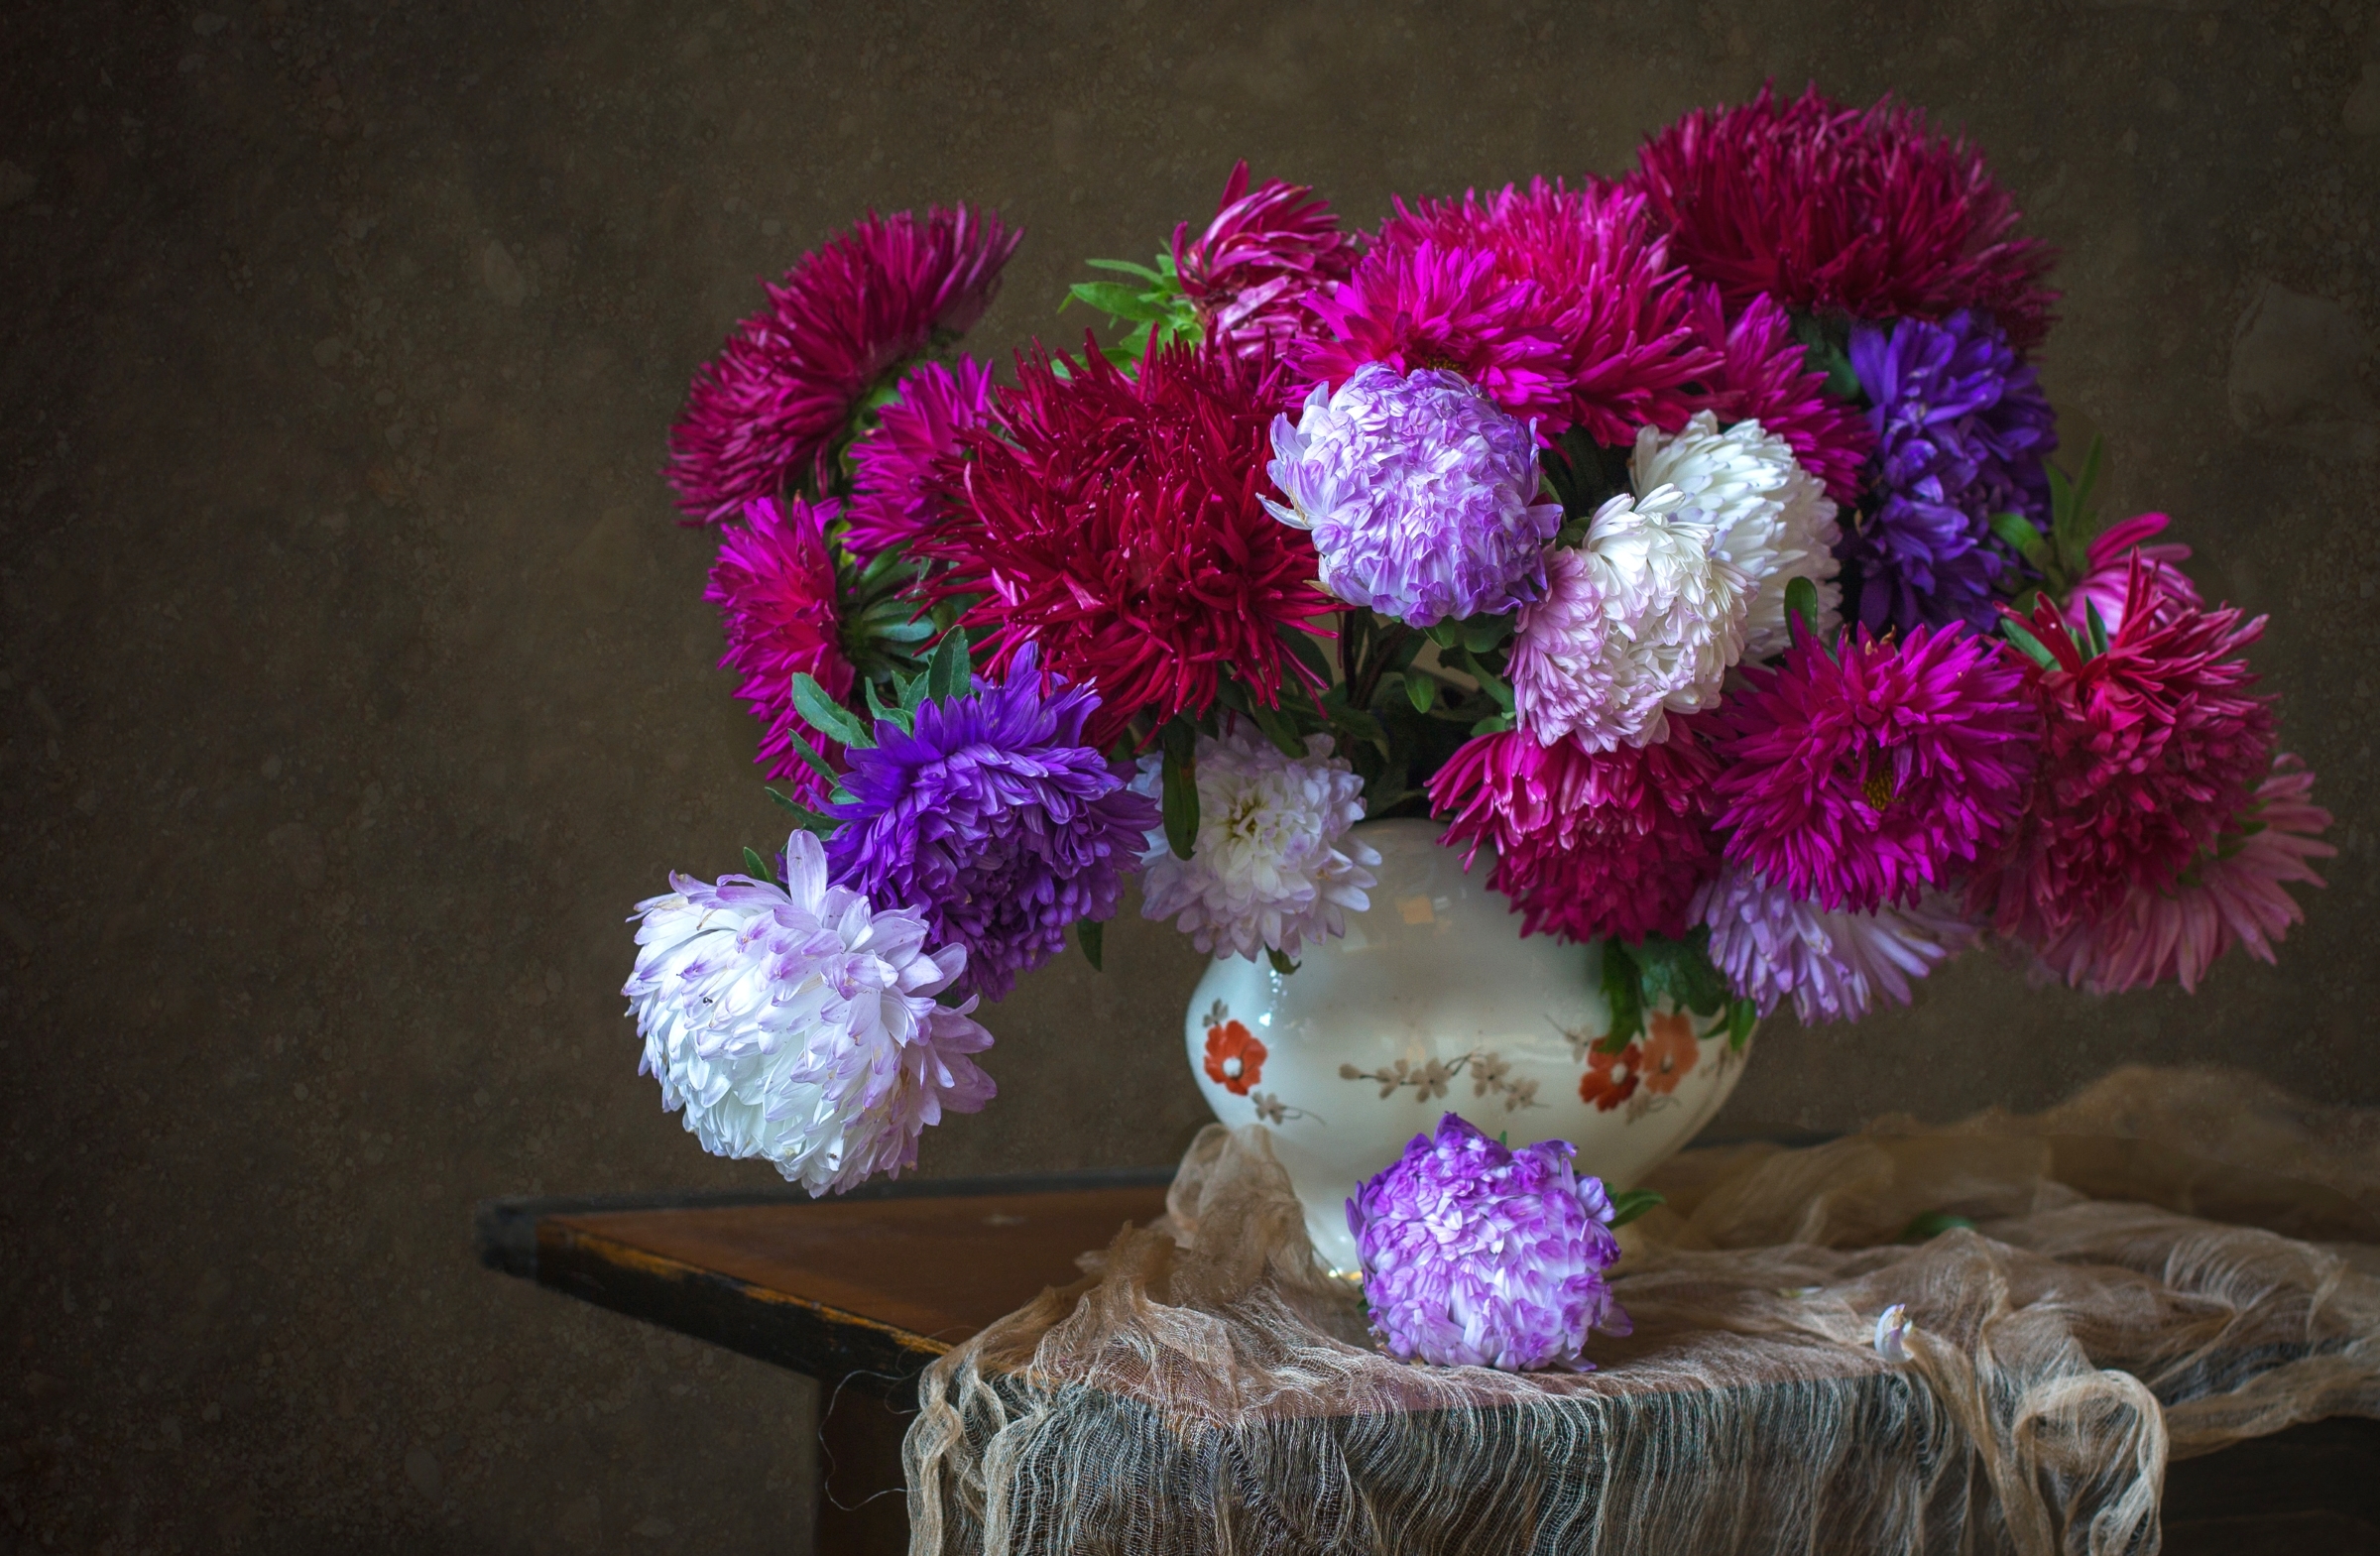 Mobile wallpaper chrysanthemum, photography, still life, flower, pink flower, purple flower, vase, white flower